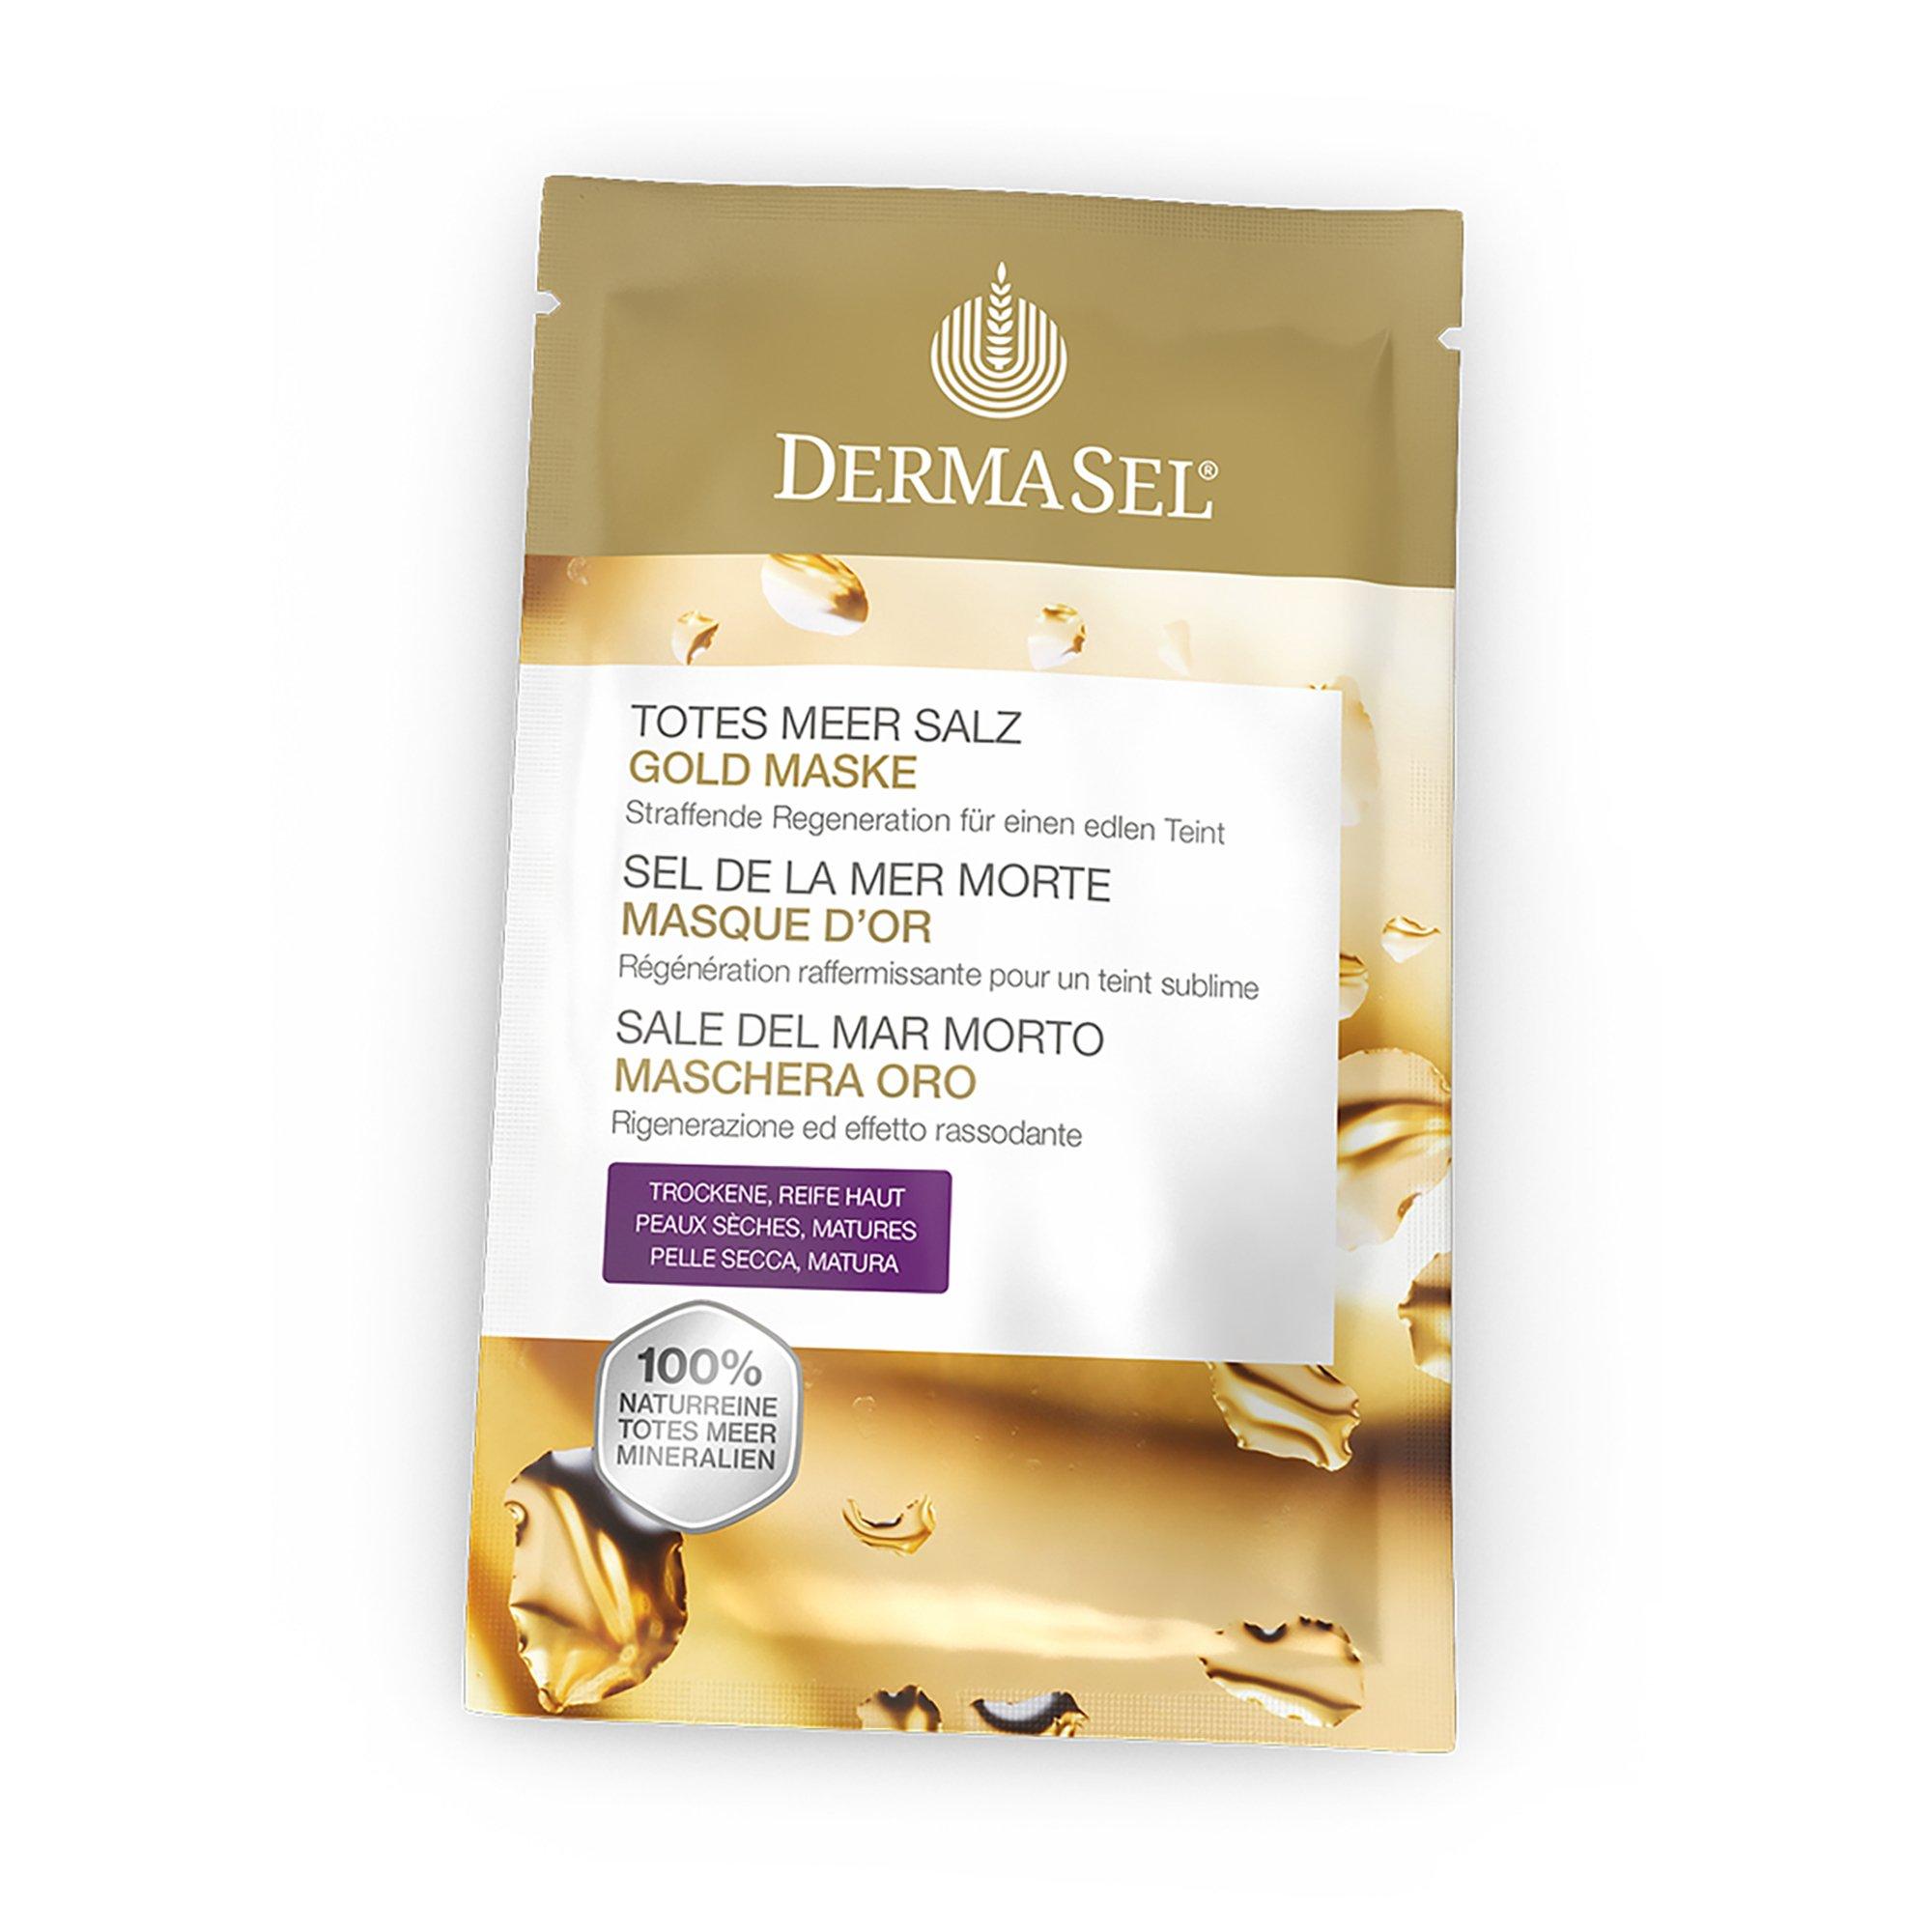 DERMASEL Exclusive Maske Gold Sale Del Mar Morto Maschera Oro 